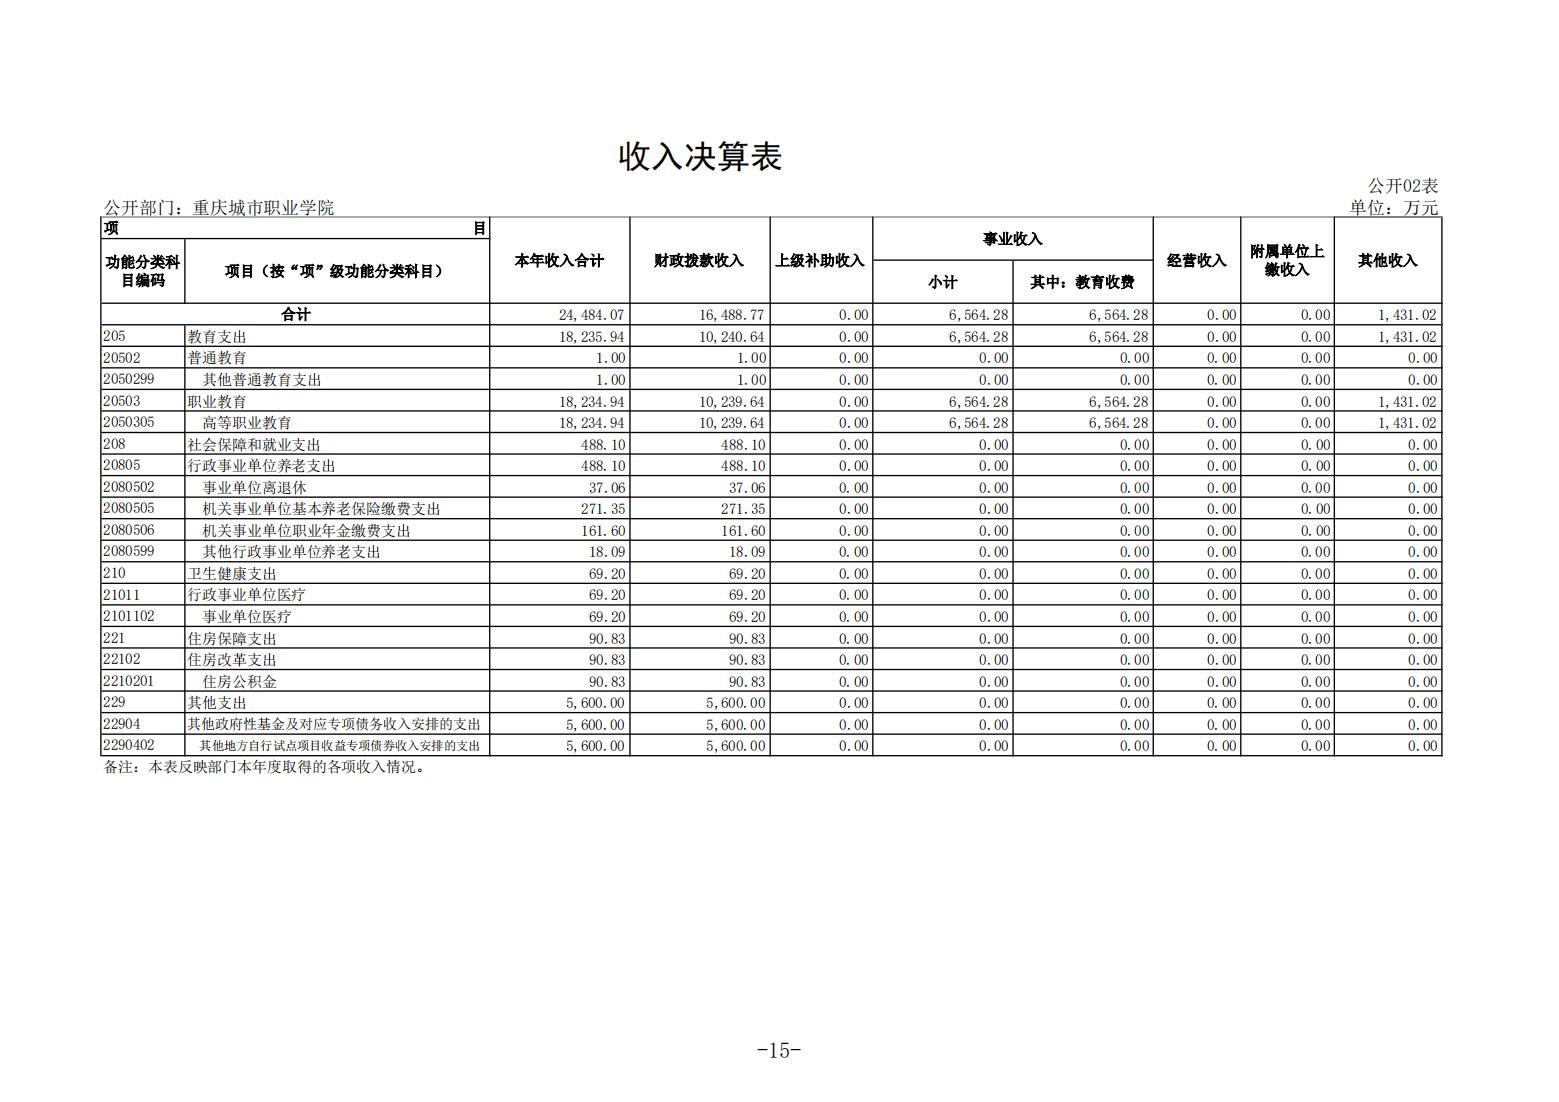 重庆城市职业学院2021年度部门决算情况说明_14.jpg